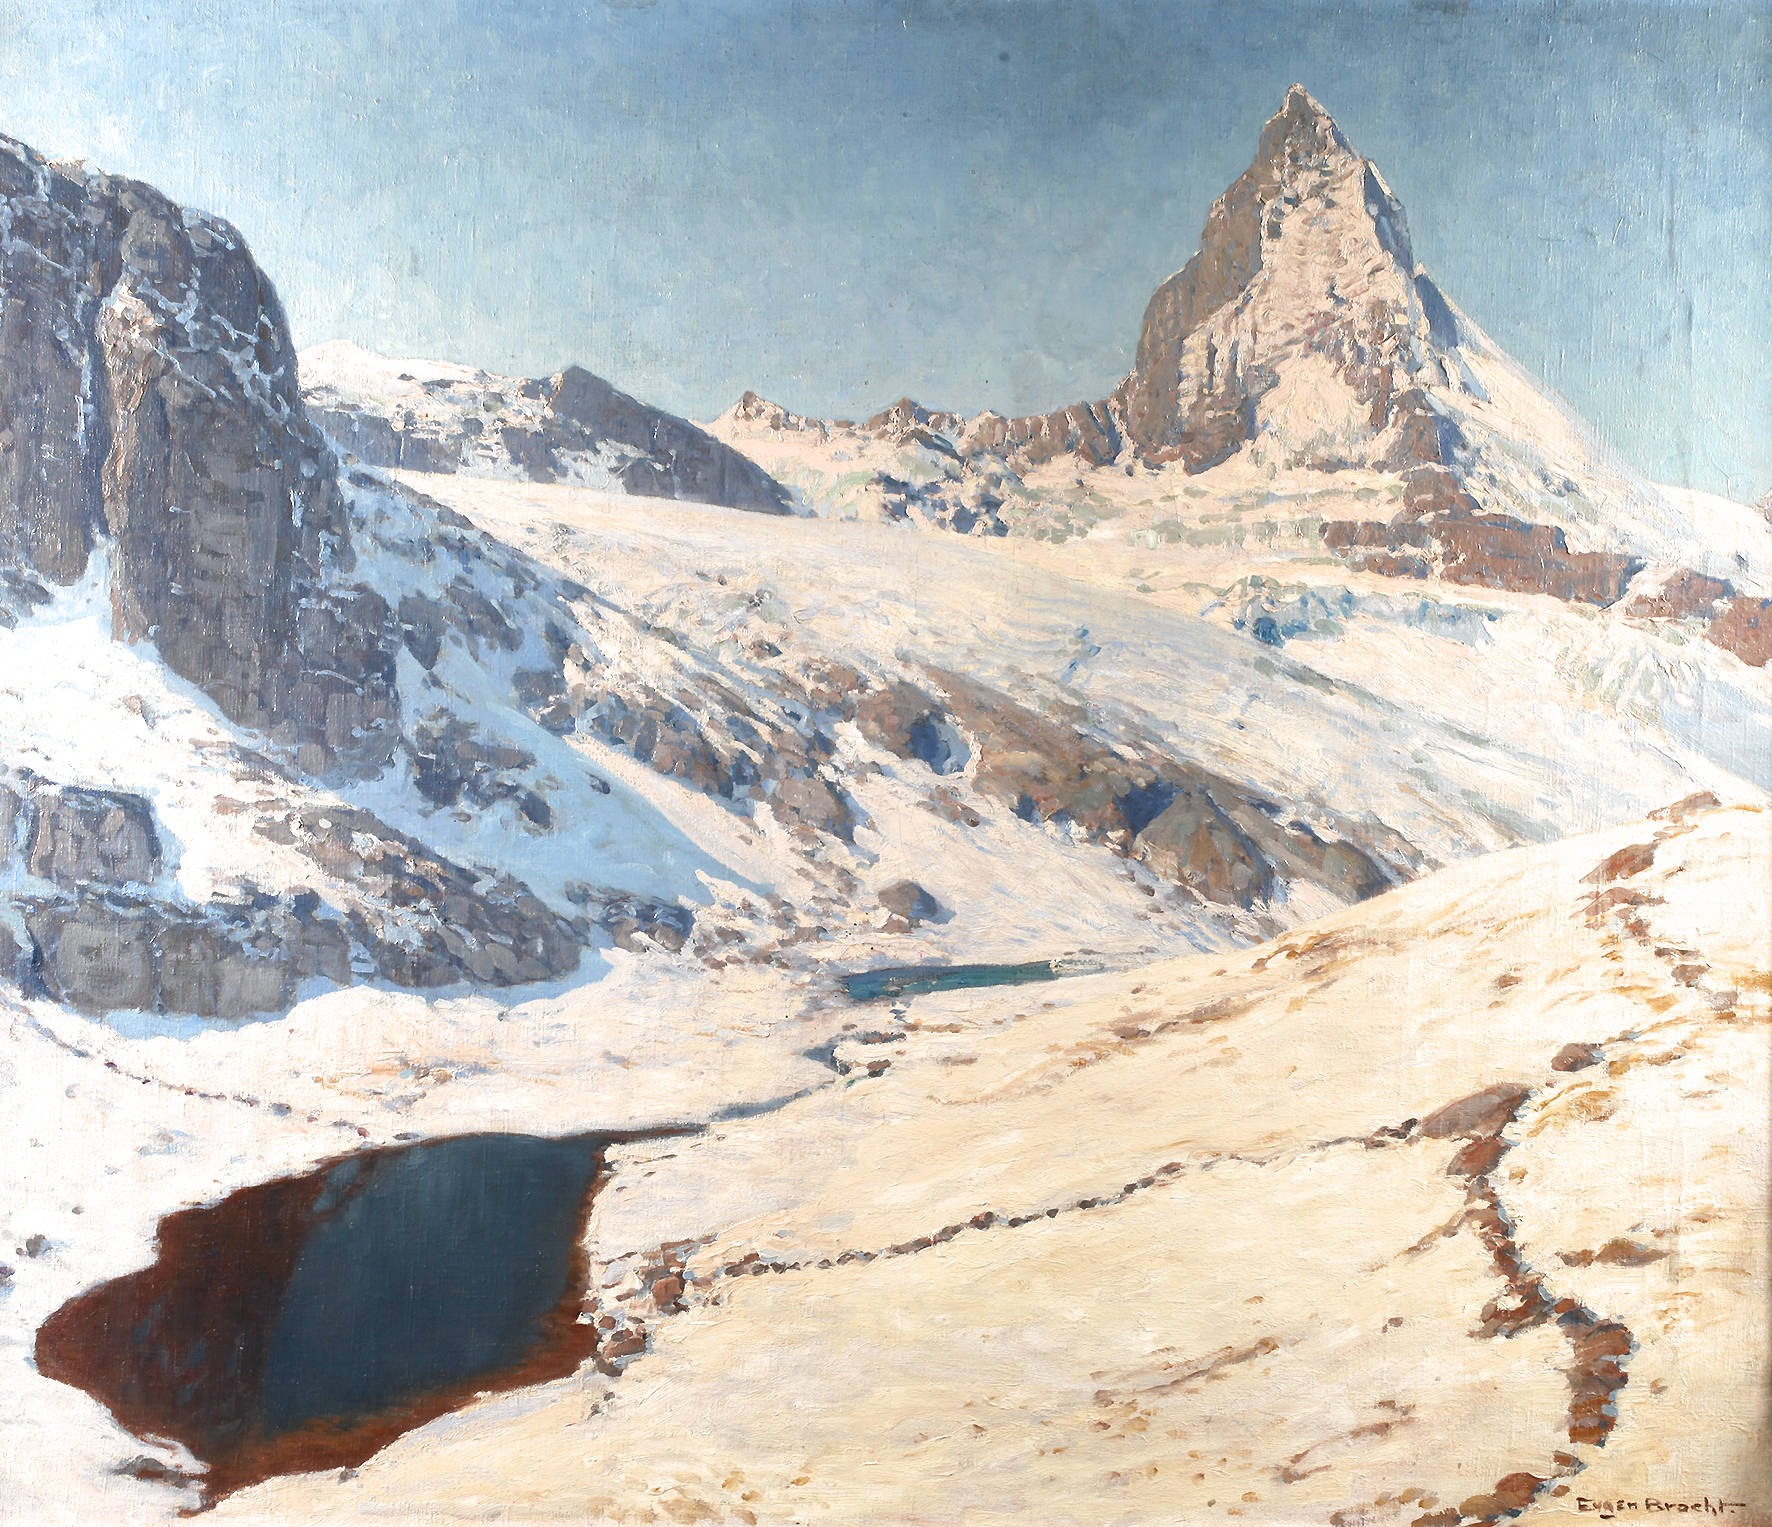 Prof. Eugen Bracht, ”Das Matterhorn in frischem Schnee”